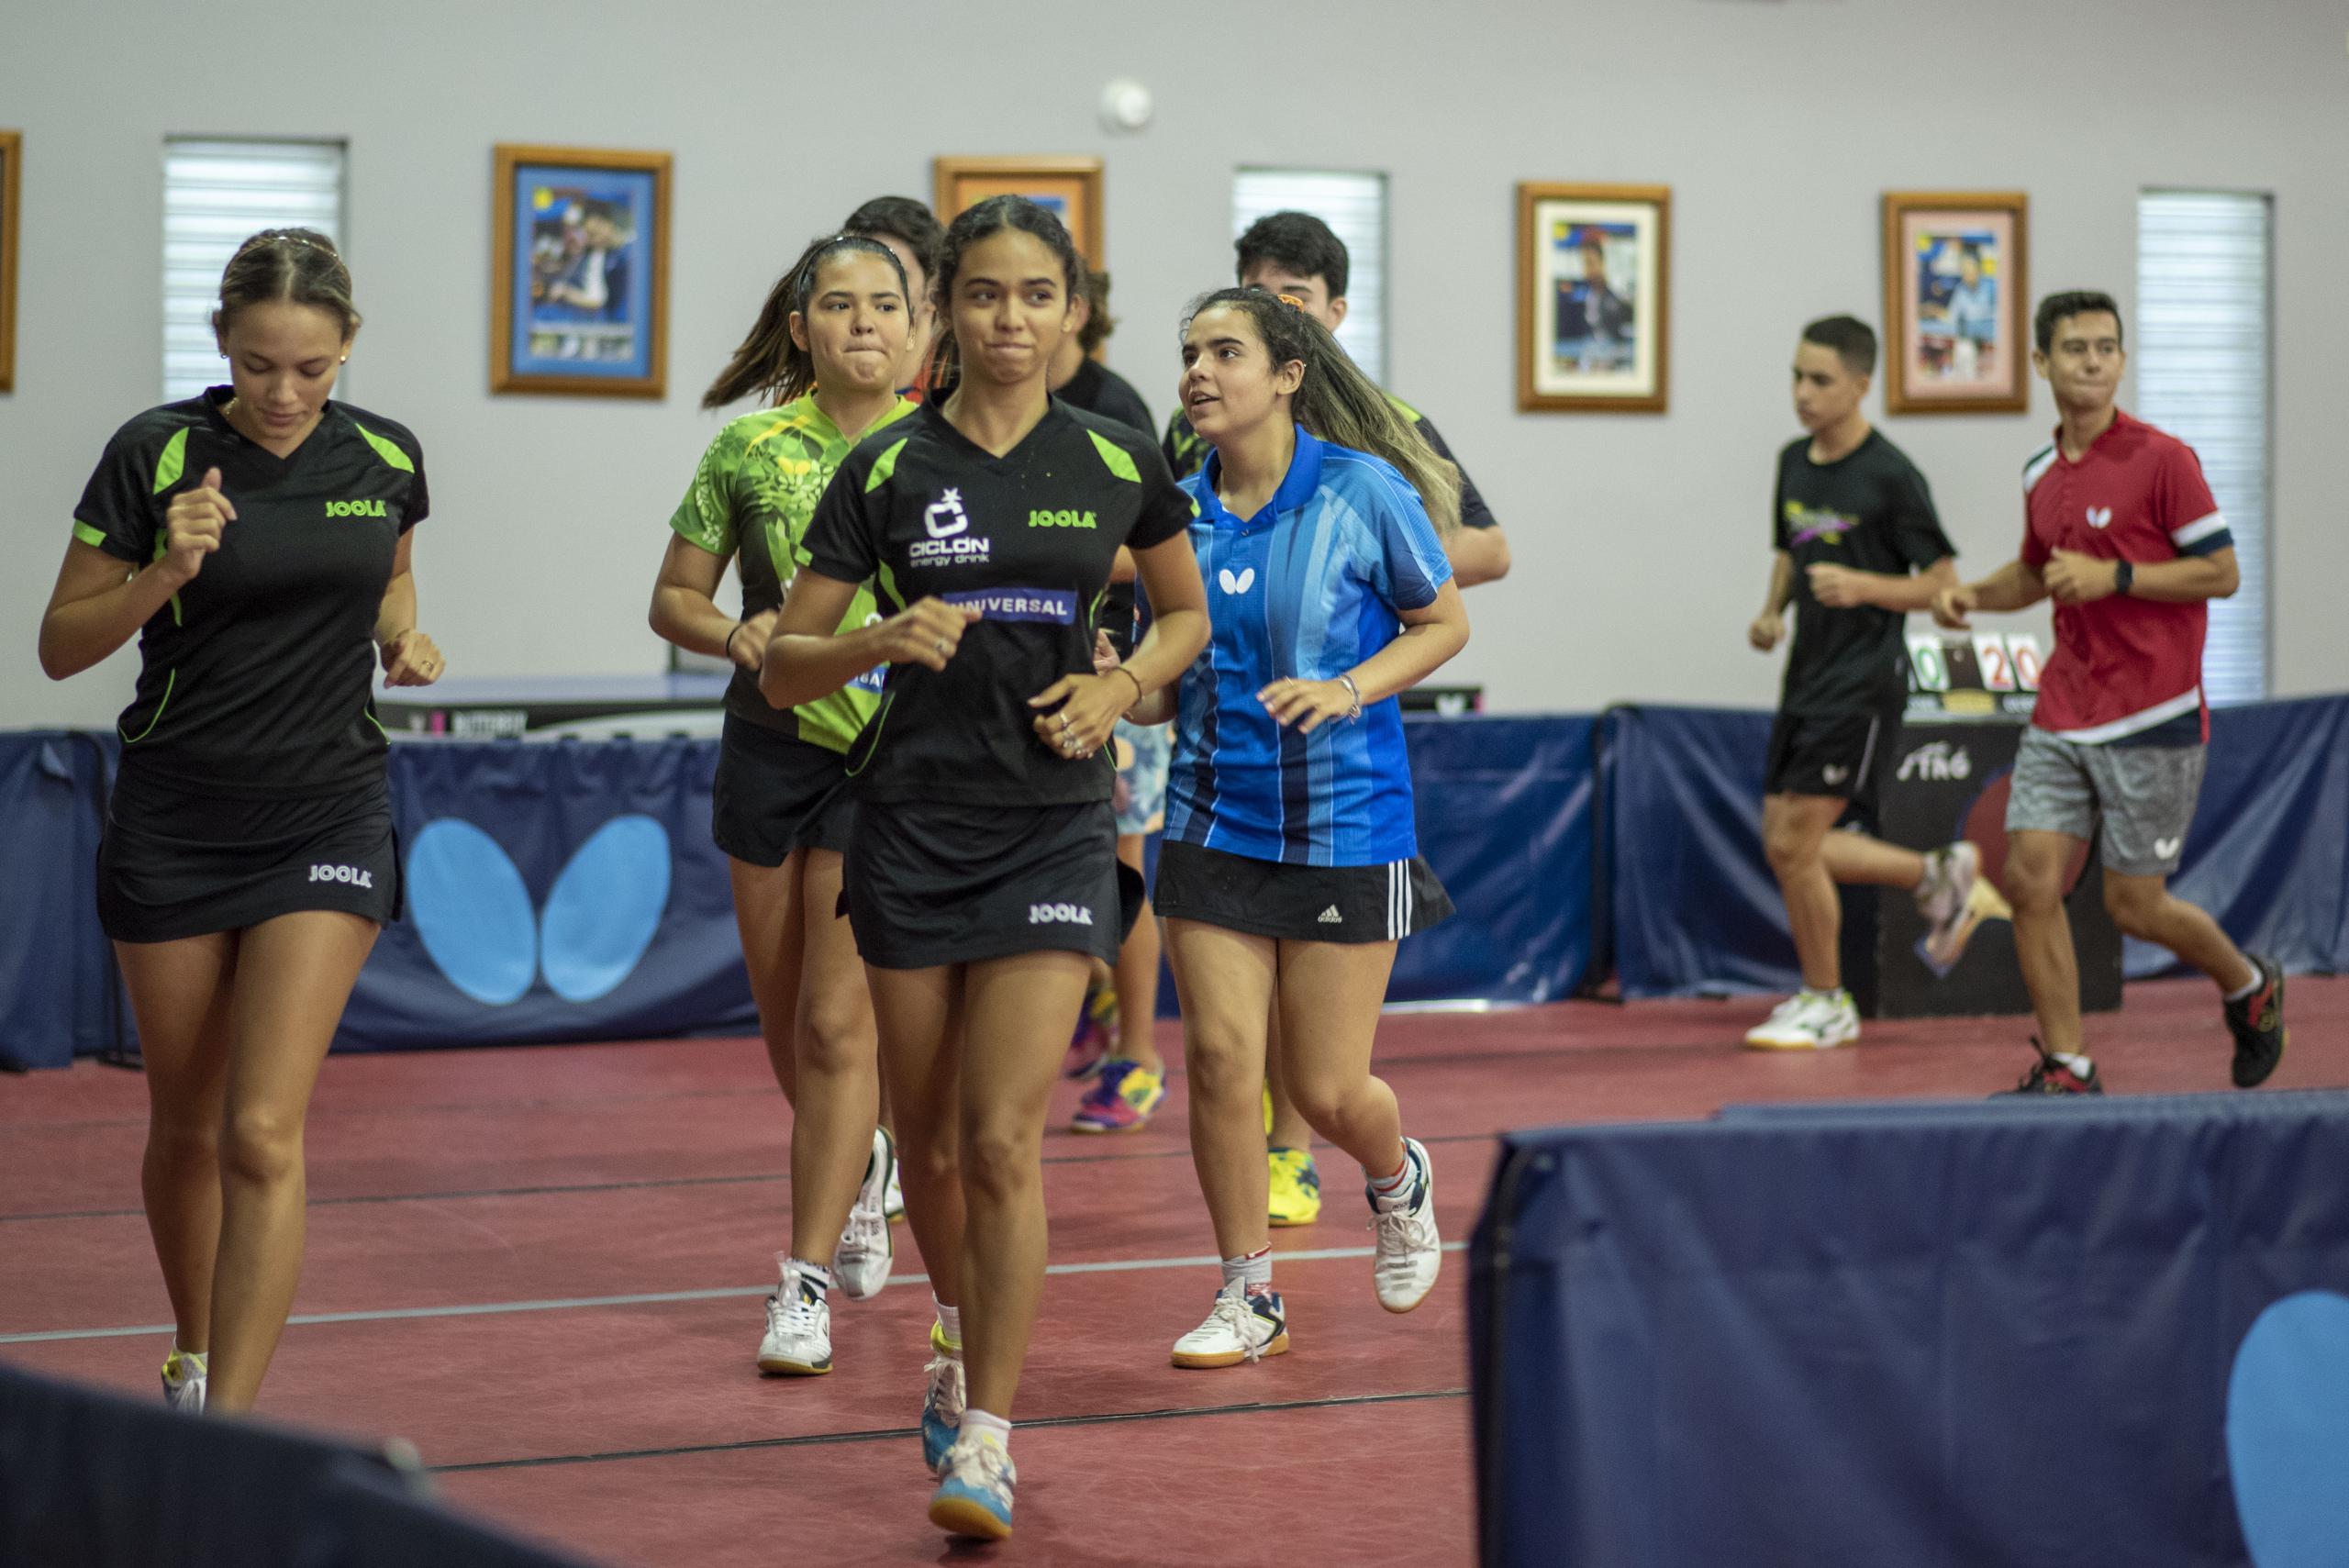 Melanie Díaz, Daniely Ríos y el resto de los jugadores corren alrededor del centro para fortalecer sus sistema cardiovascular.